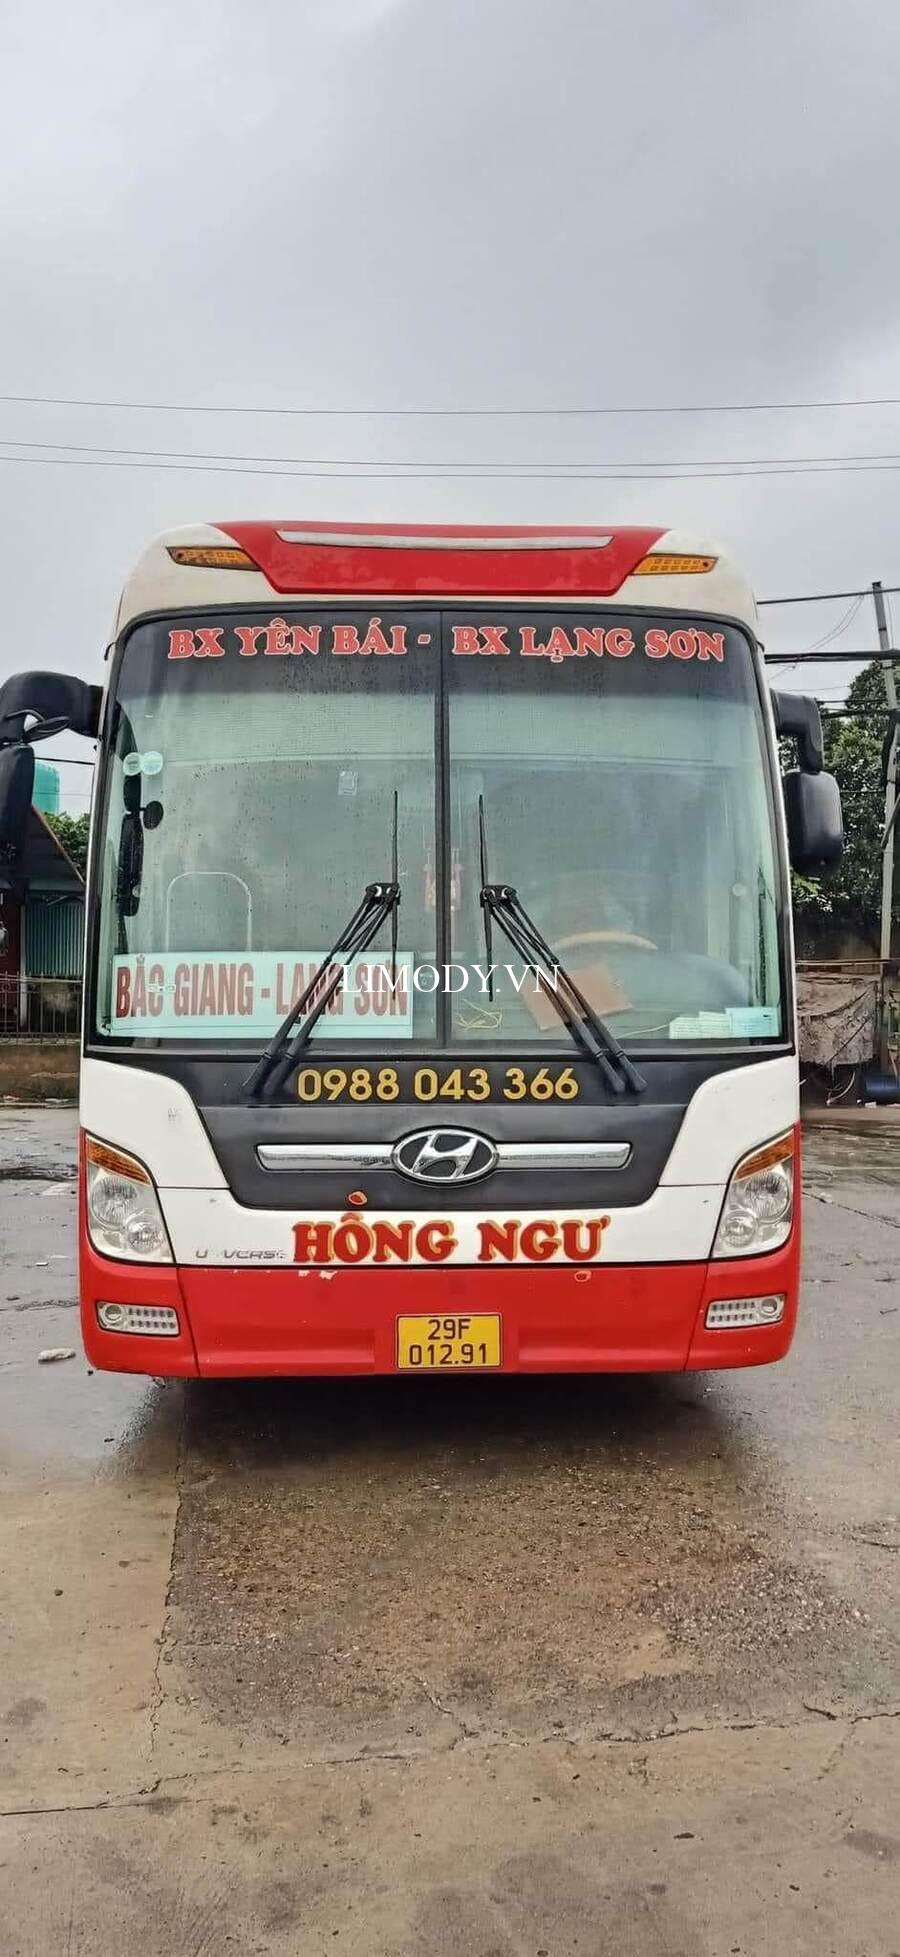 Top 5 Nhà xe Bắc Giang Yên Bái Nghĩa Lộ vé xe khách giường nằm